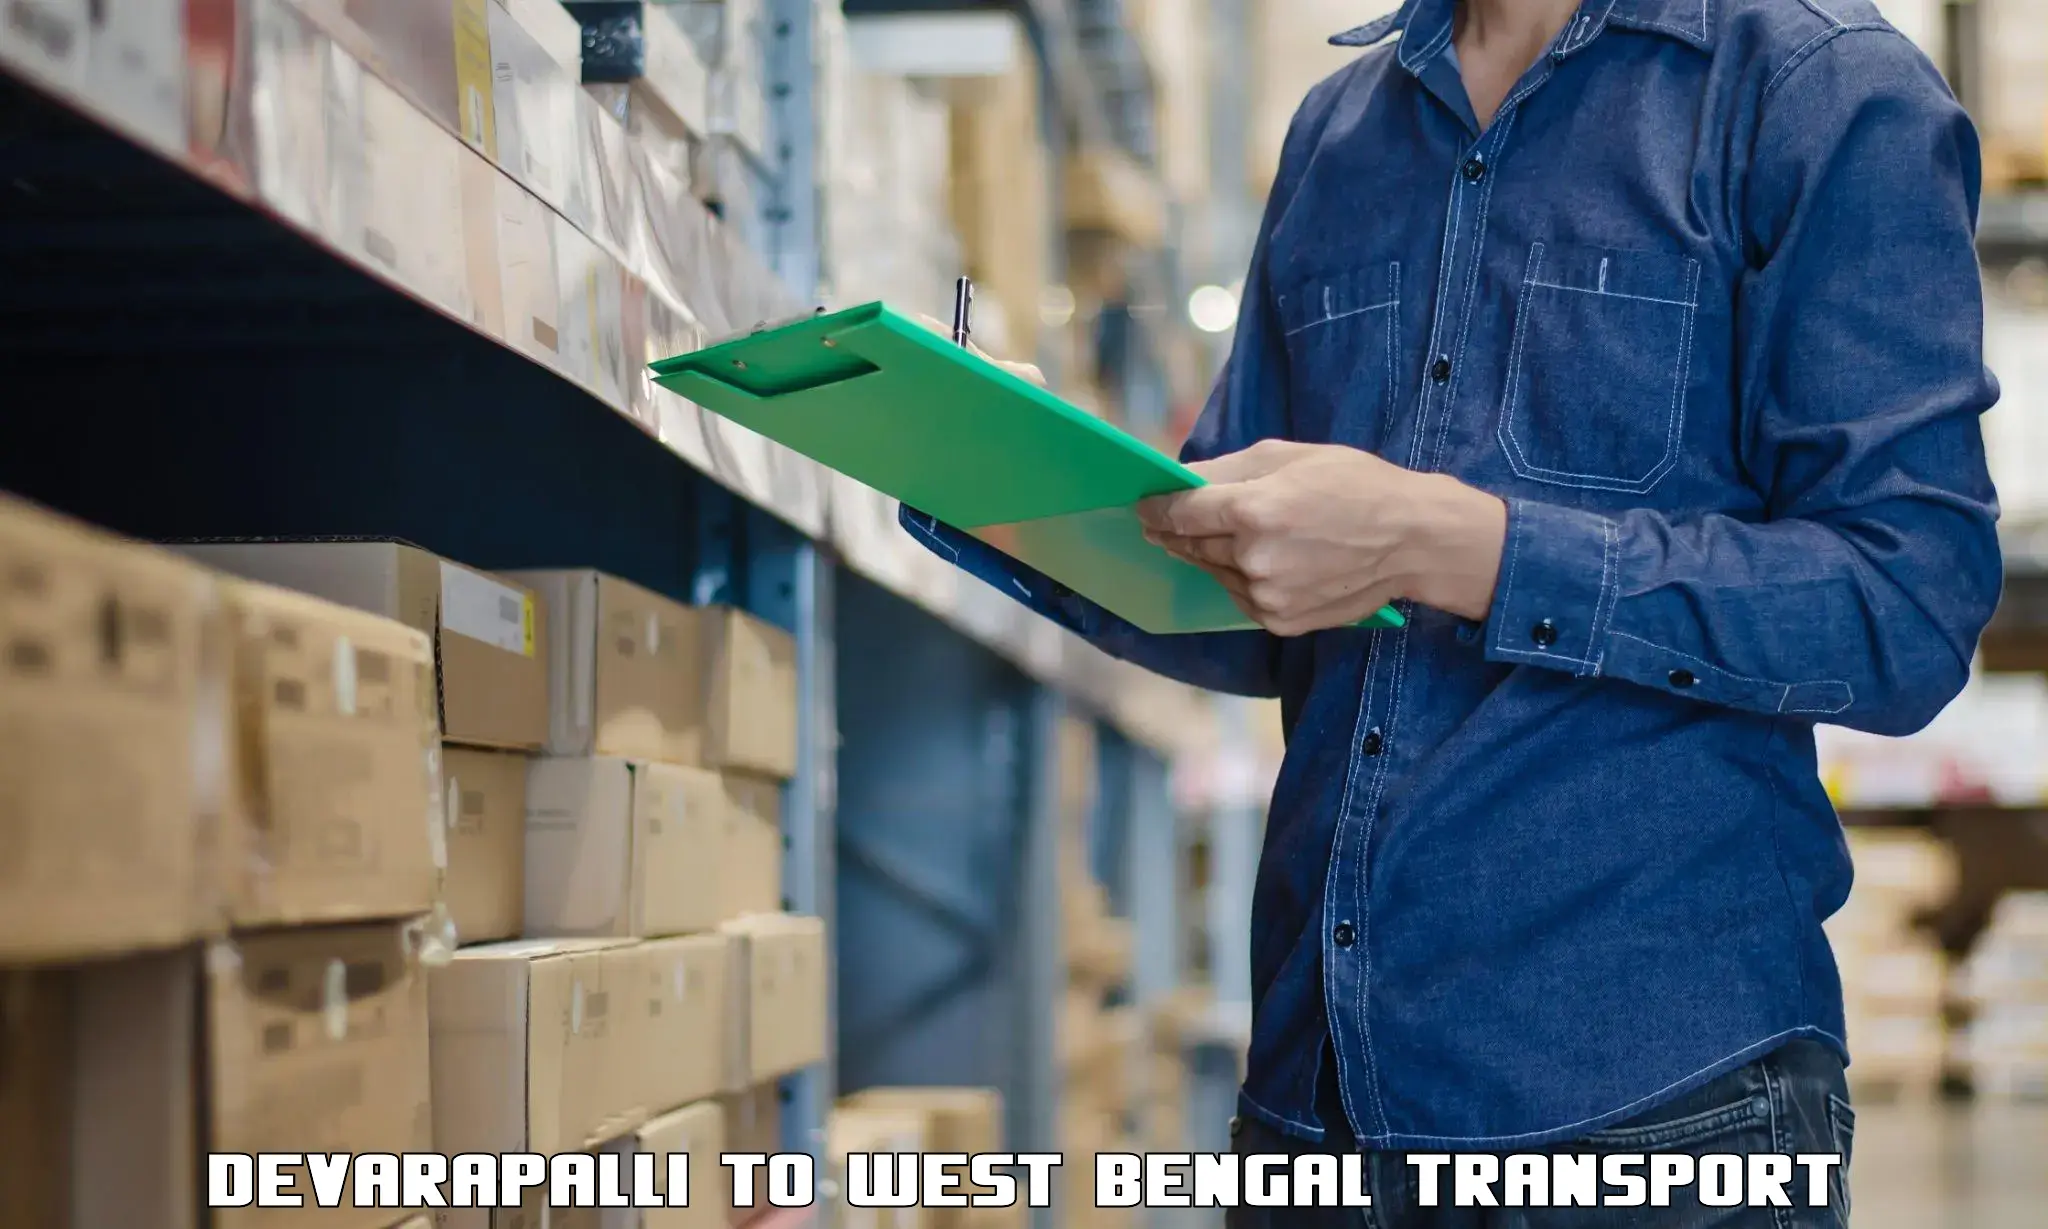 Interstate transport services Devarapalli to Malda